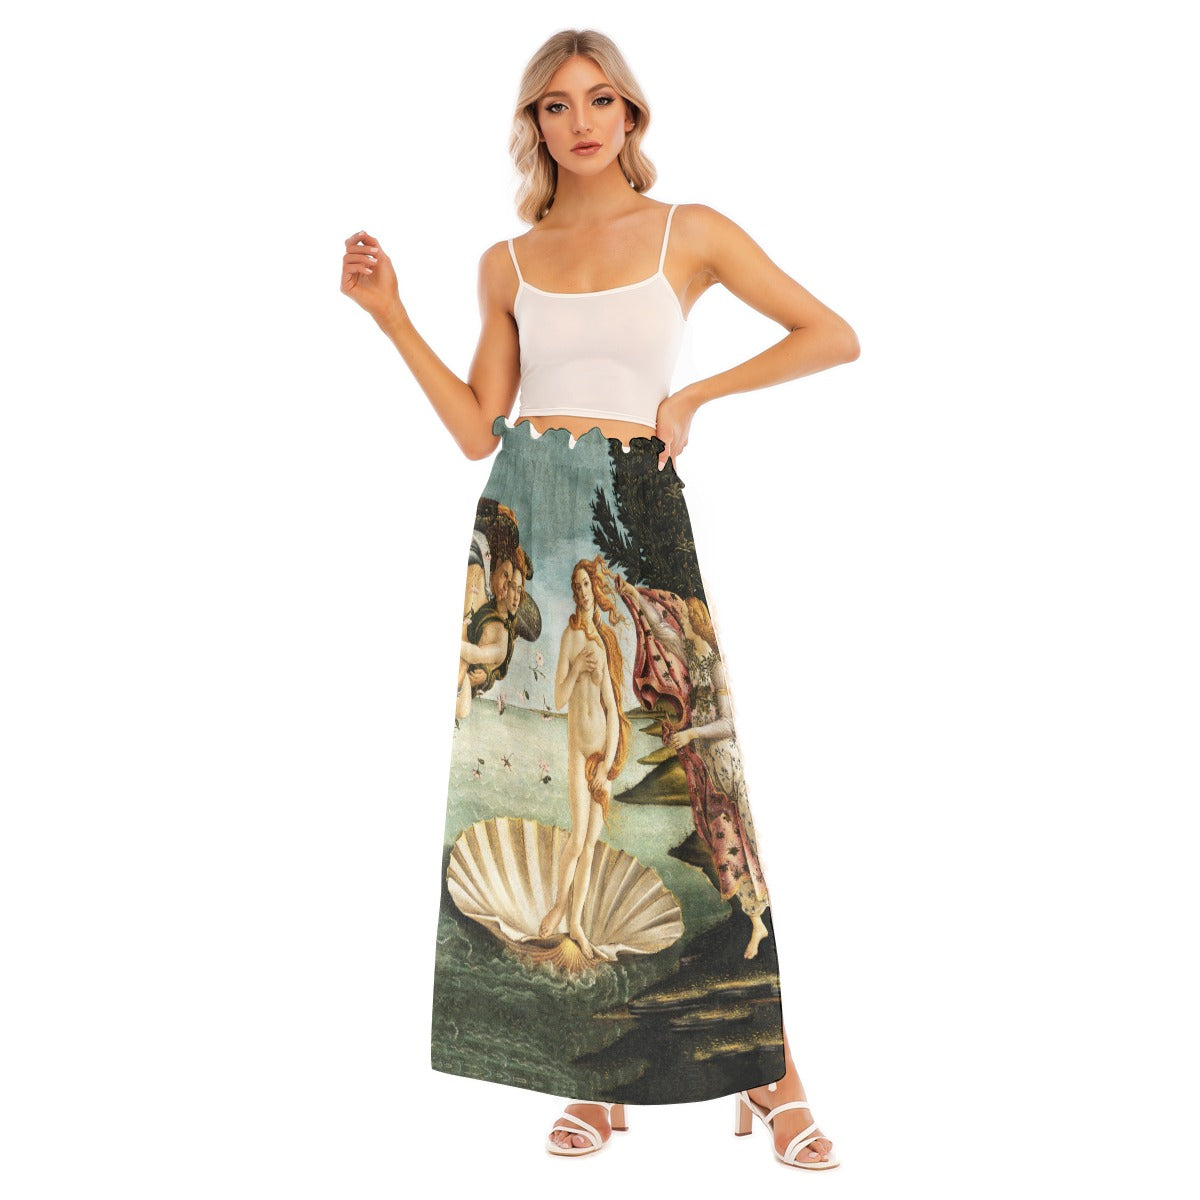 Divine Venus-inspired side split skirt